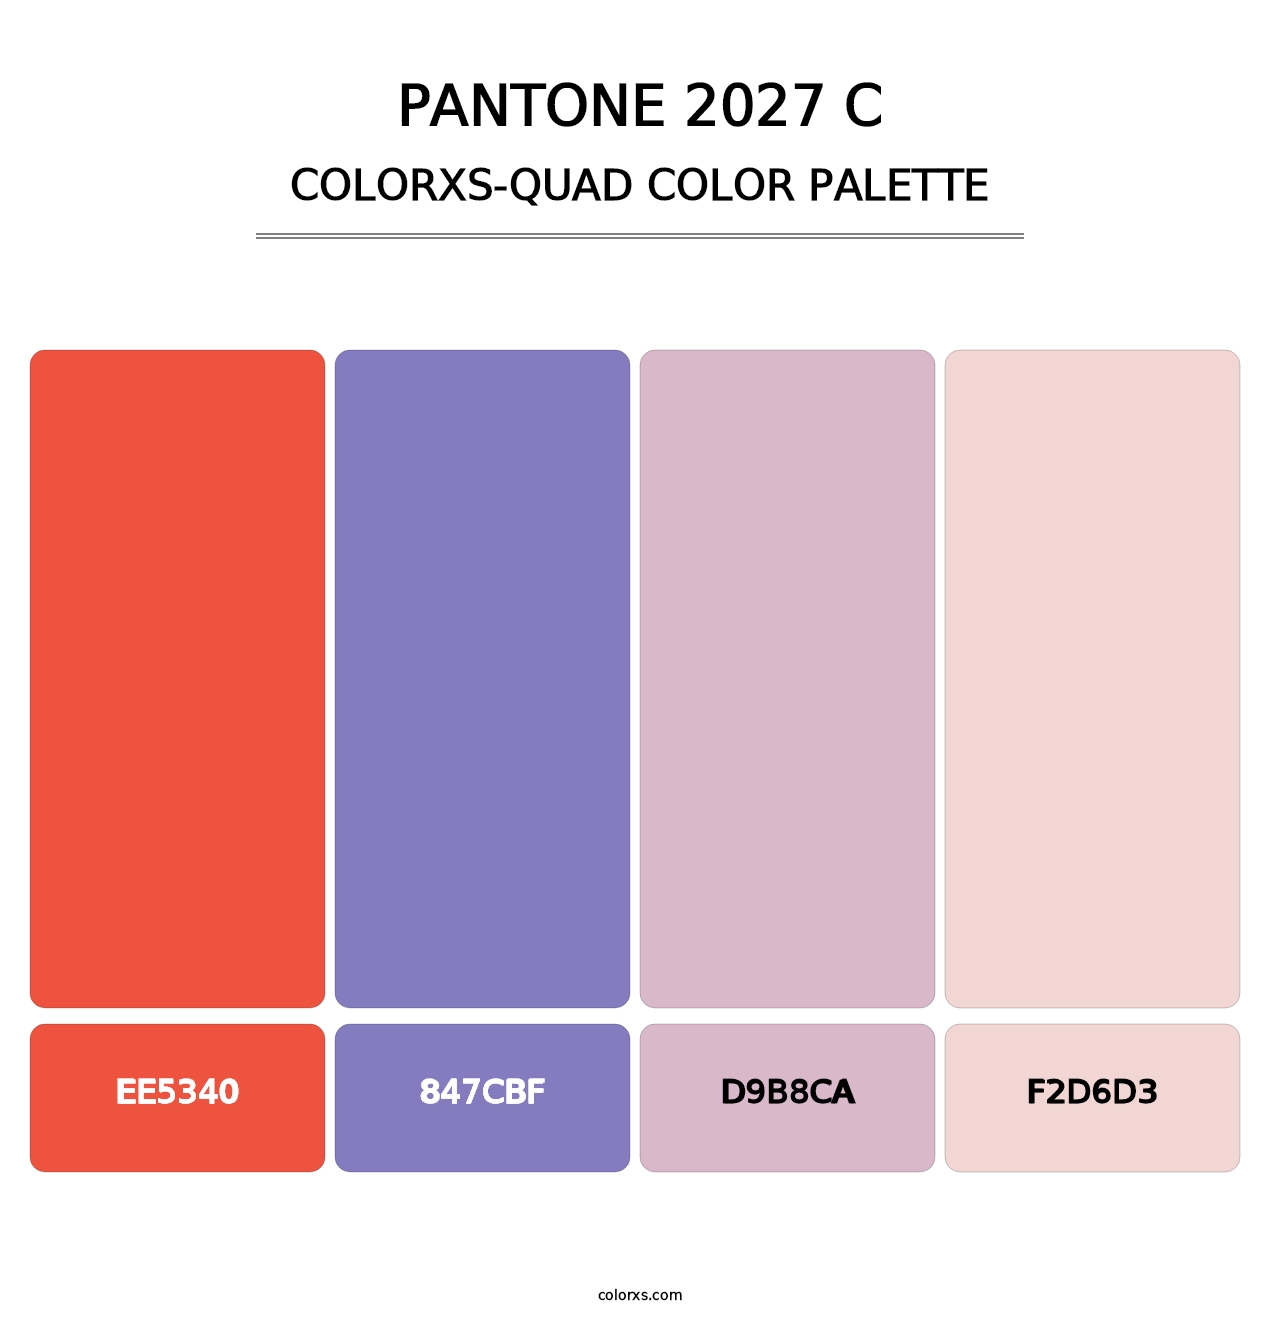 PANTONE 2027 C - Colorxs Quad Palette